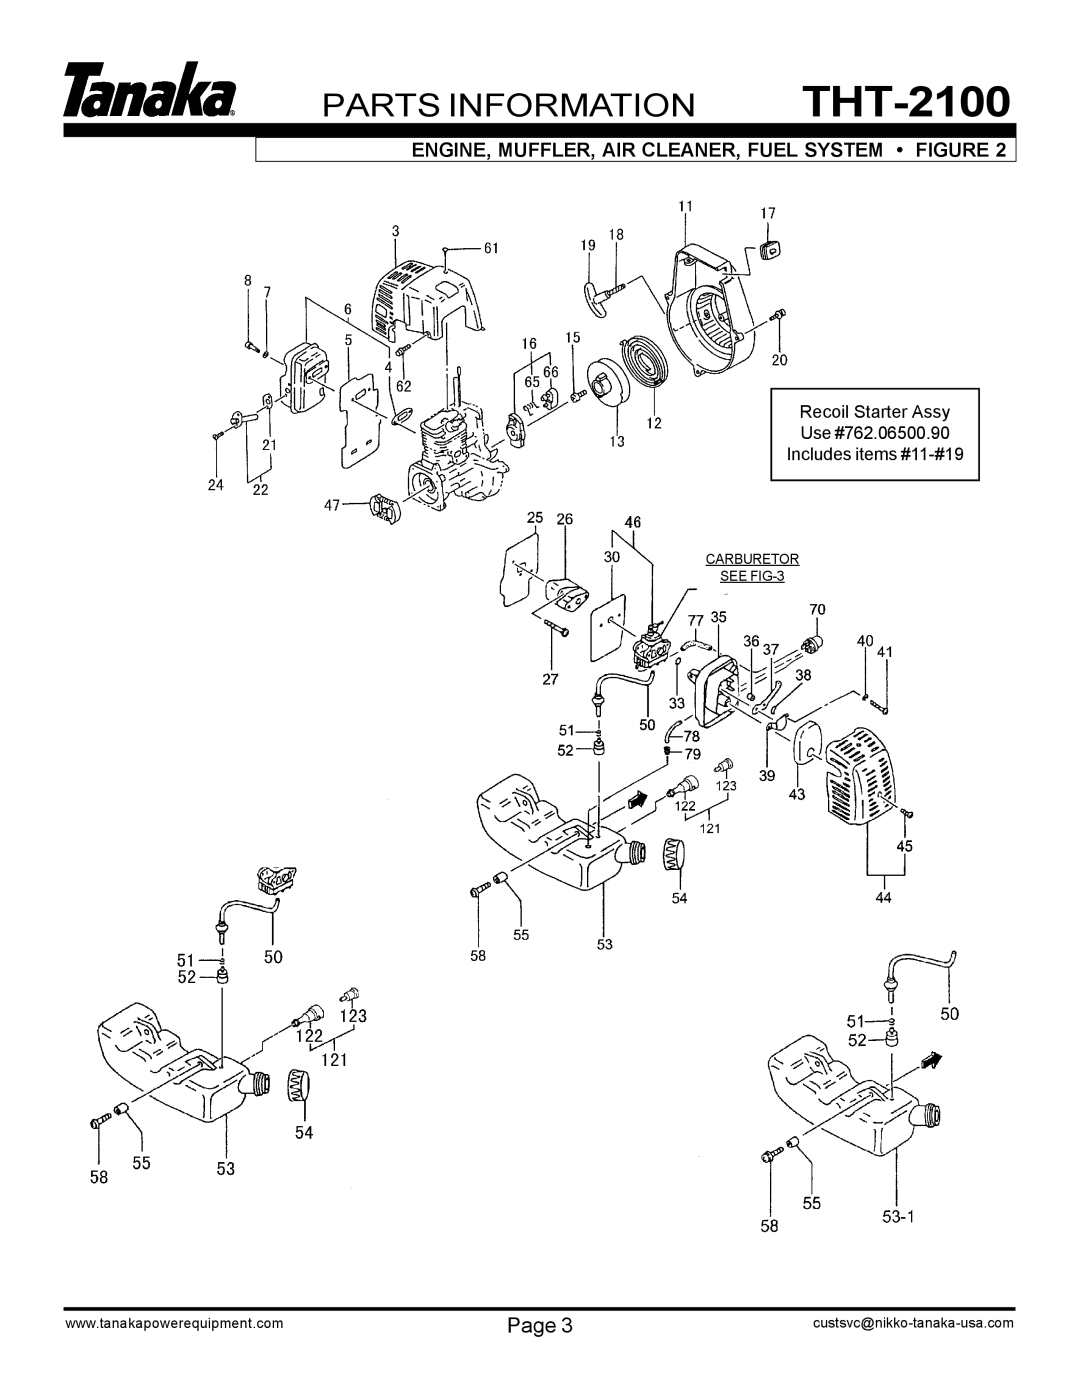 Tanaka manual THT-2100, Parts Information, CARBURETOR SEE FIG-3 